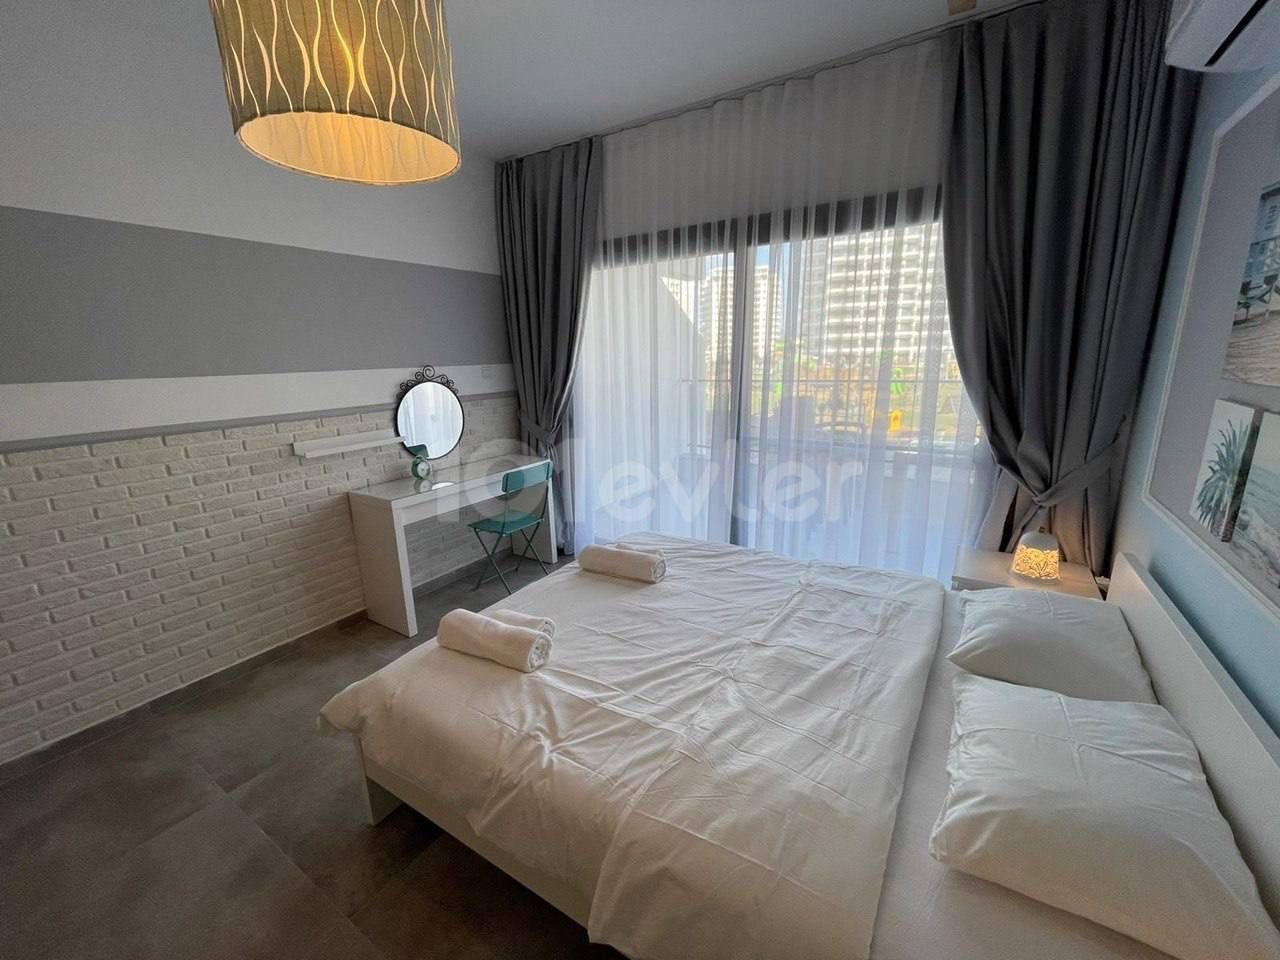 Investitionsgutschein-Wohnung im Iskele Sezar Resort mit Hotelkonzept AirBnb und durchschnittlicher Tagesrendite bei Buchung von 30 Euro